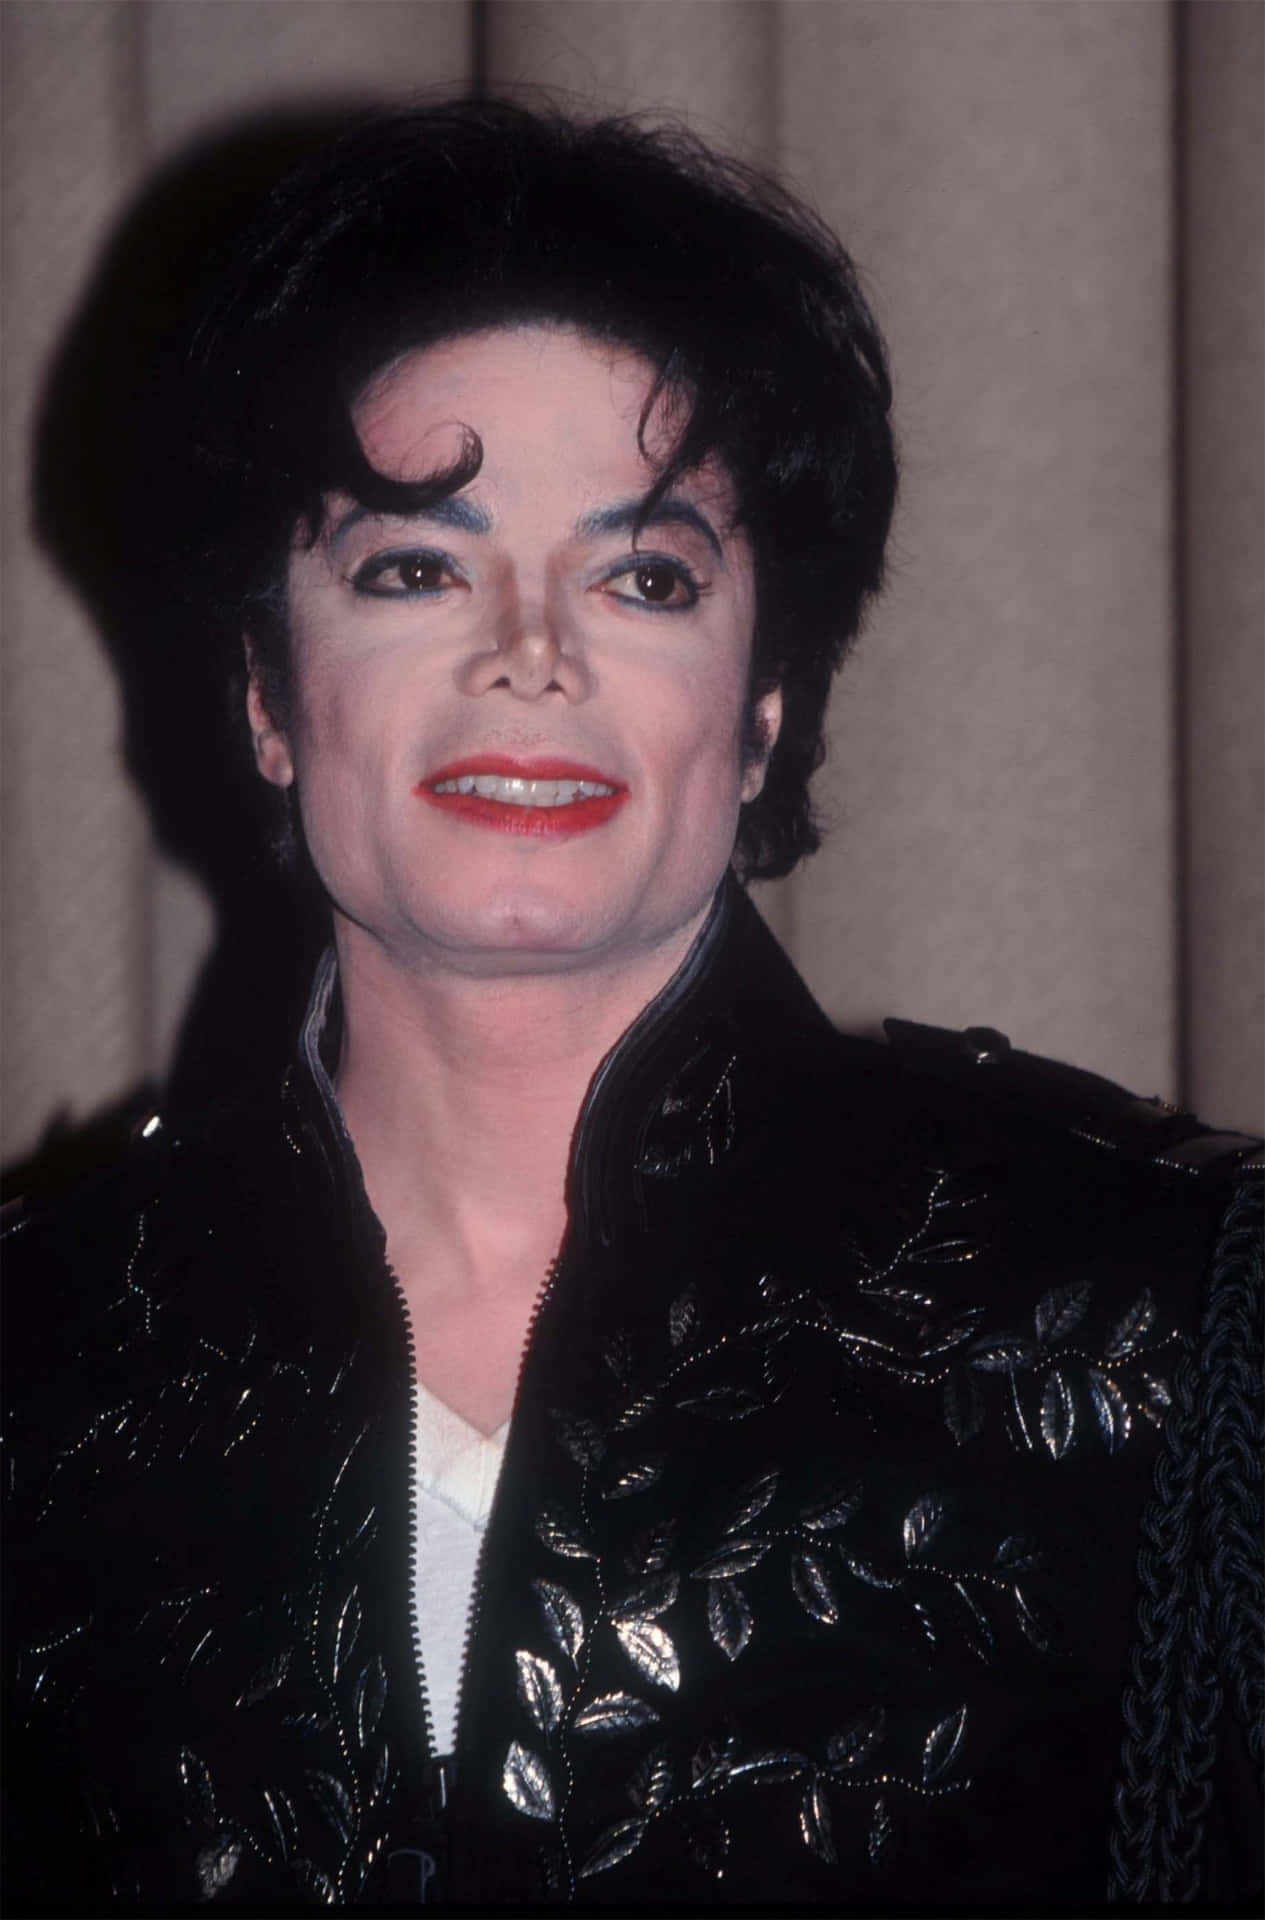 Bildervon Michael Jackson.